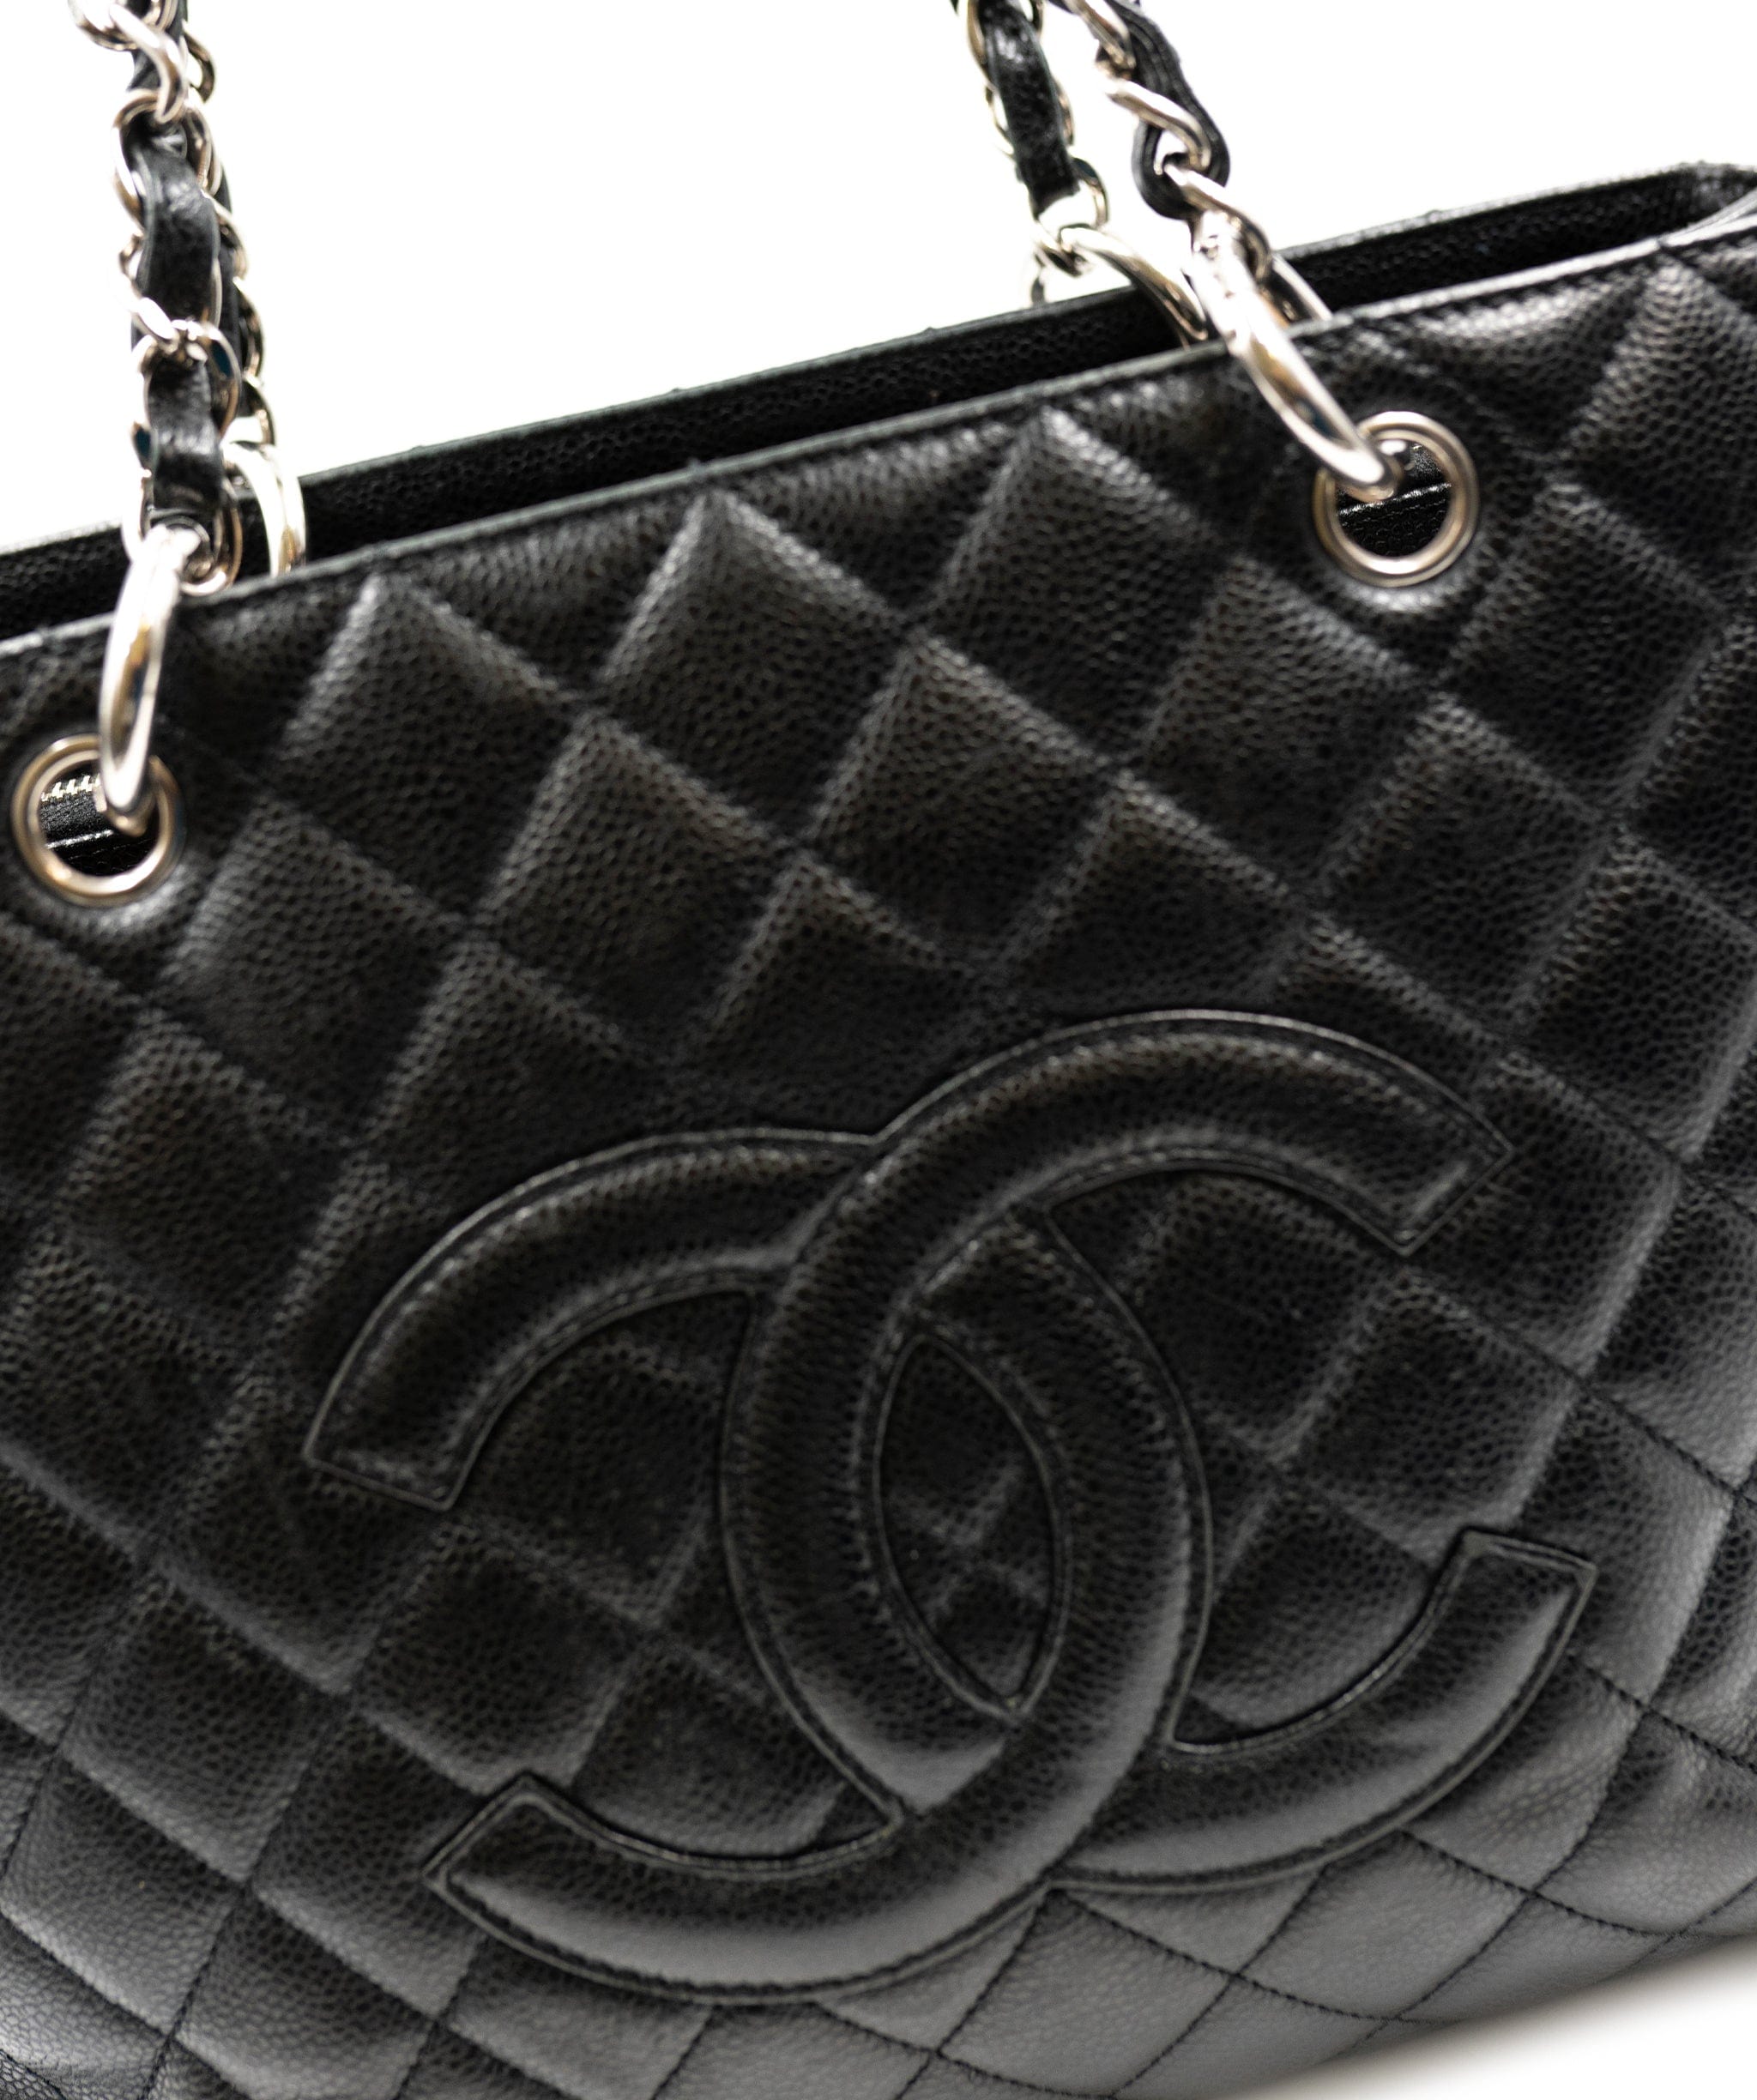 Chanel Chanel GST Bag in black caviar shw AGC1202